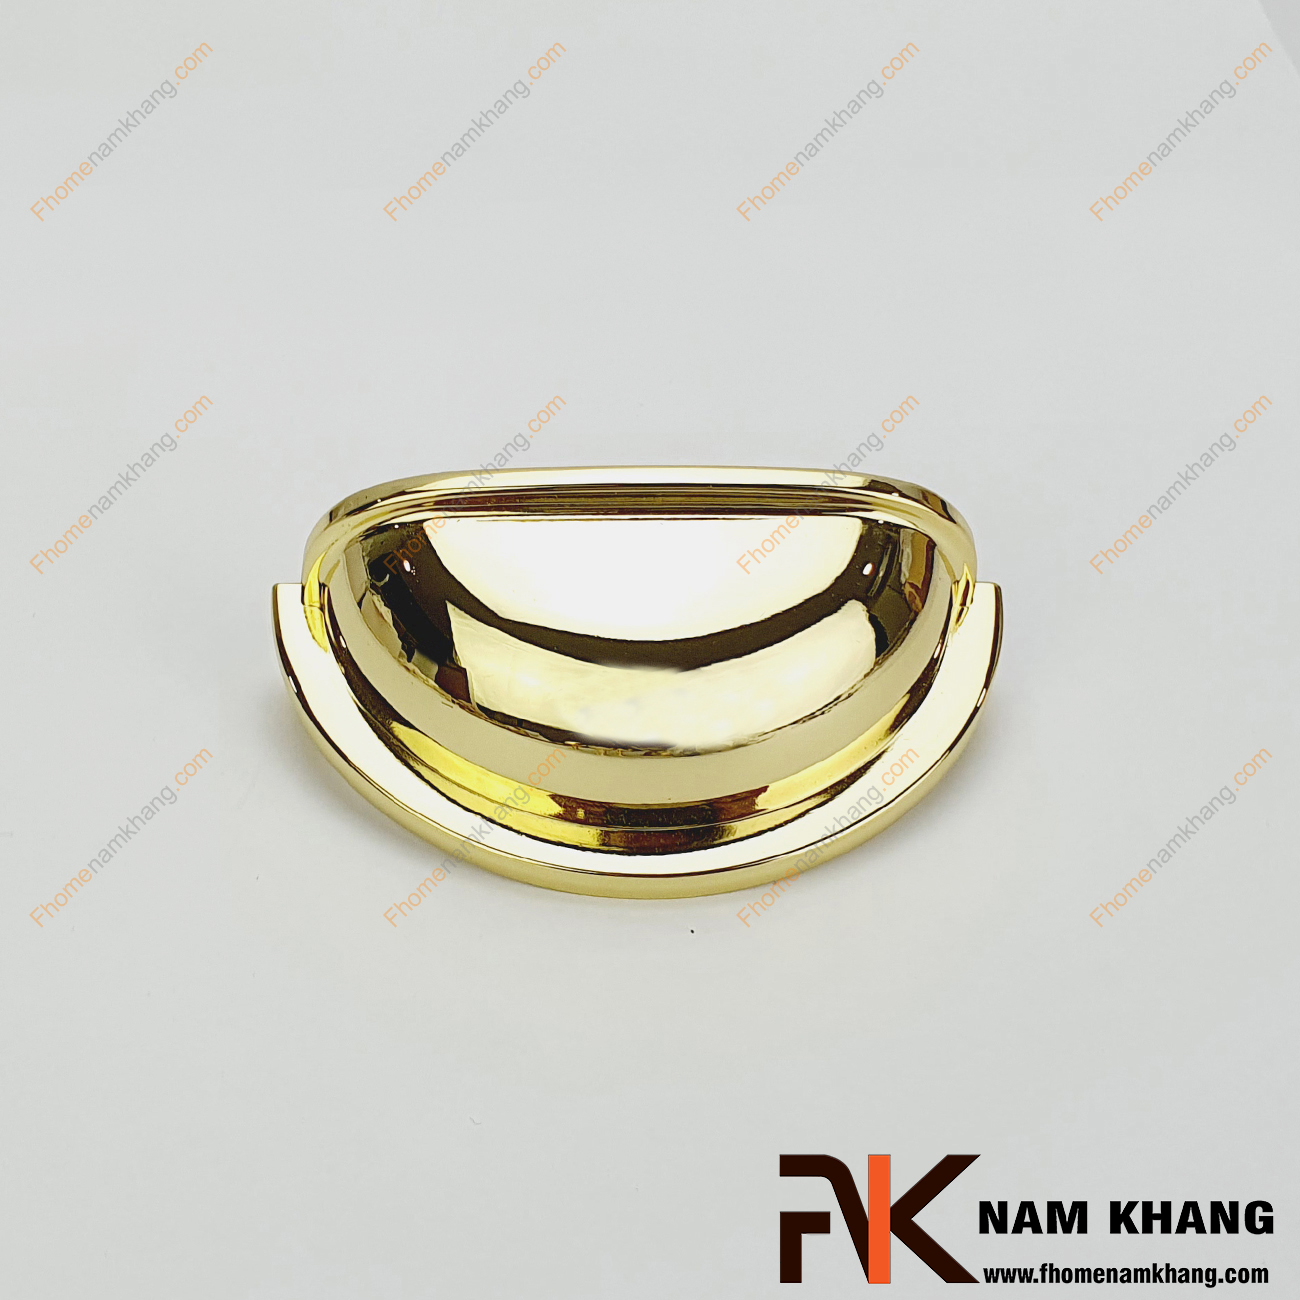 Tay nắm tủ bán nguyệt dạng tổ yến vàng bóng NK309-64V một sản phẩm tay nắm có thiết kế quen thuộc dạng tổ yến.